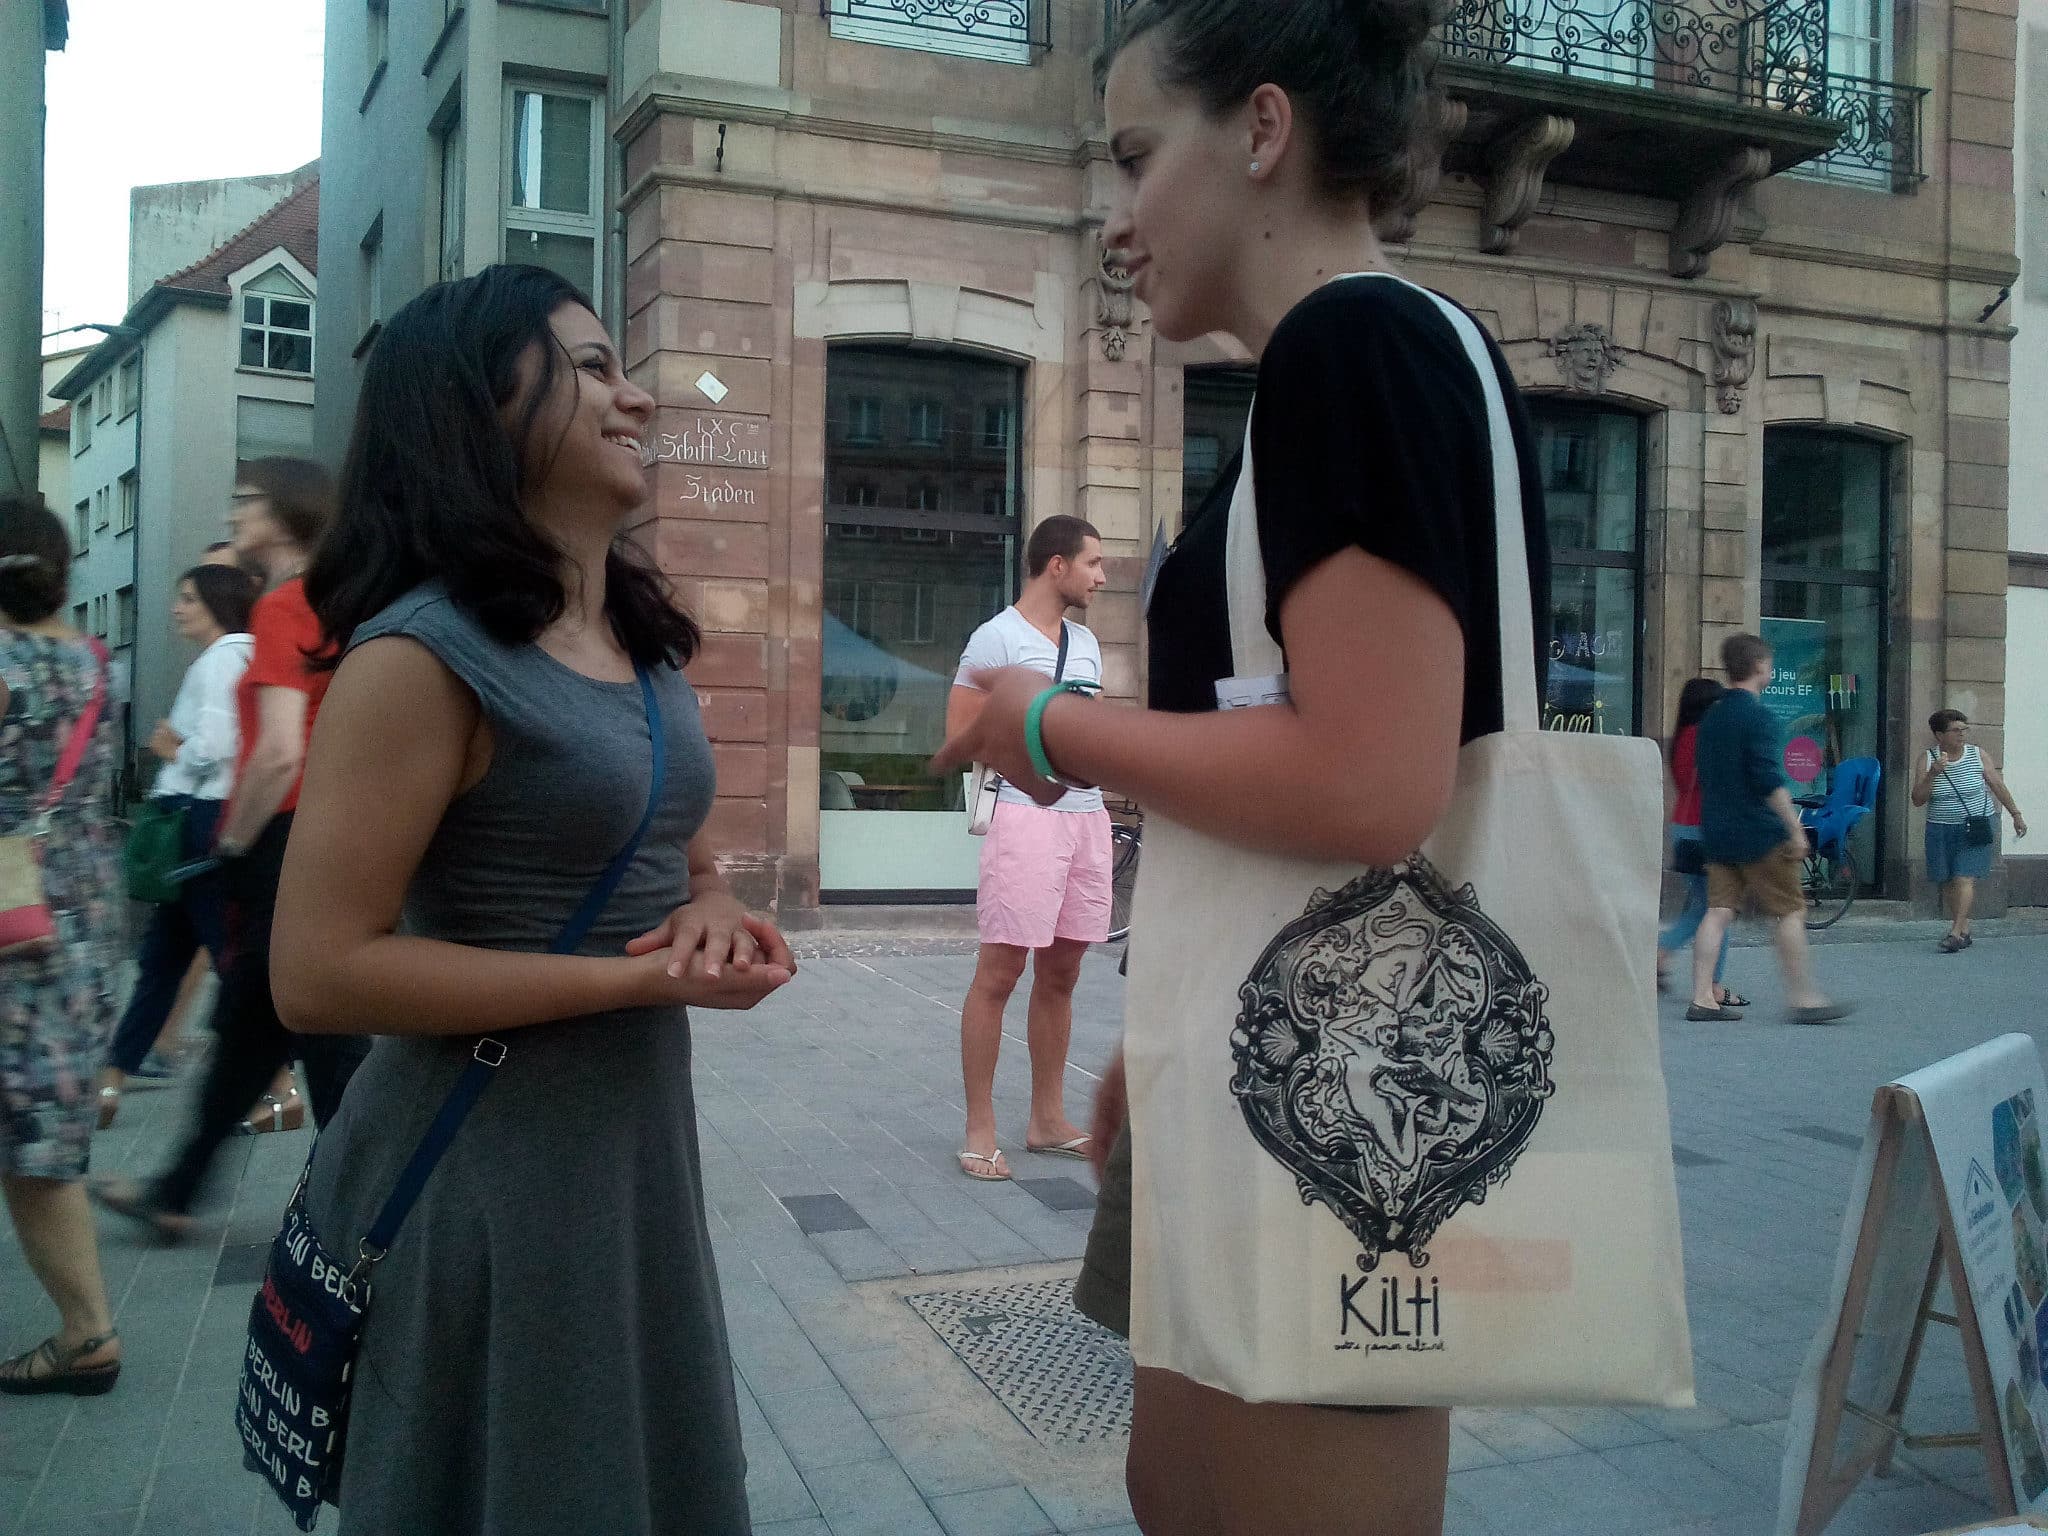 Avec Kilti, une Strasbourgeoise tente de vendre de la culture en paniers